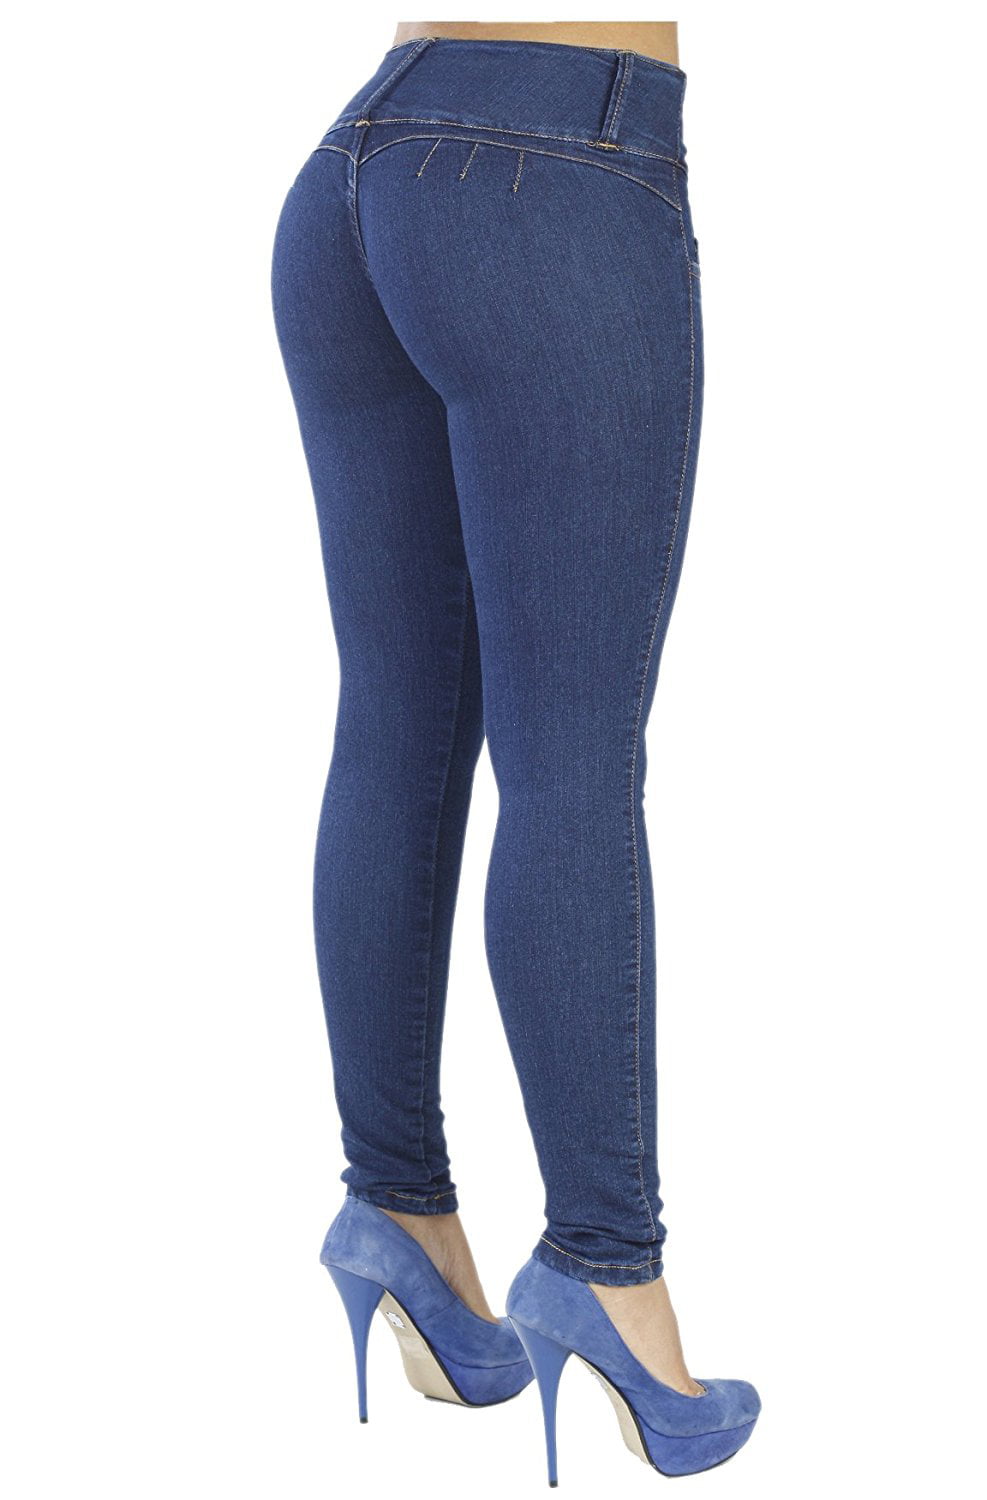 Blue Butt Lifter Jeans Wonderfit 2073 - Wonderfitshapers